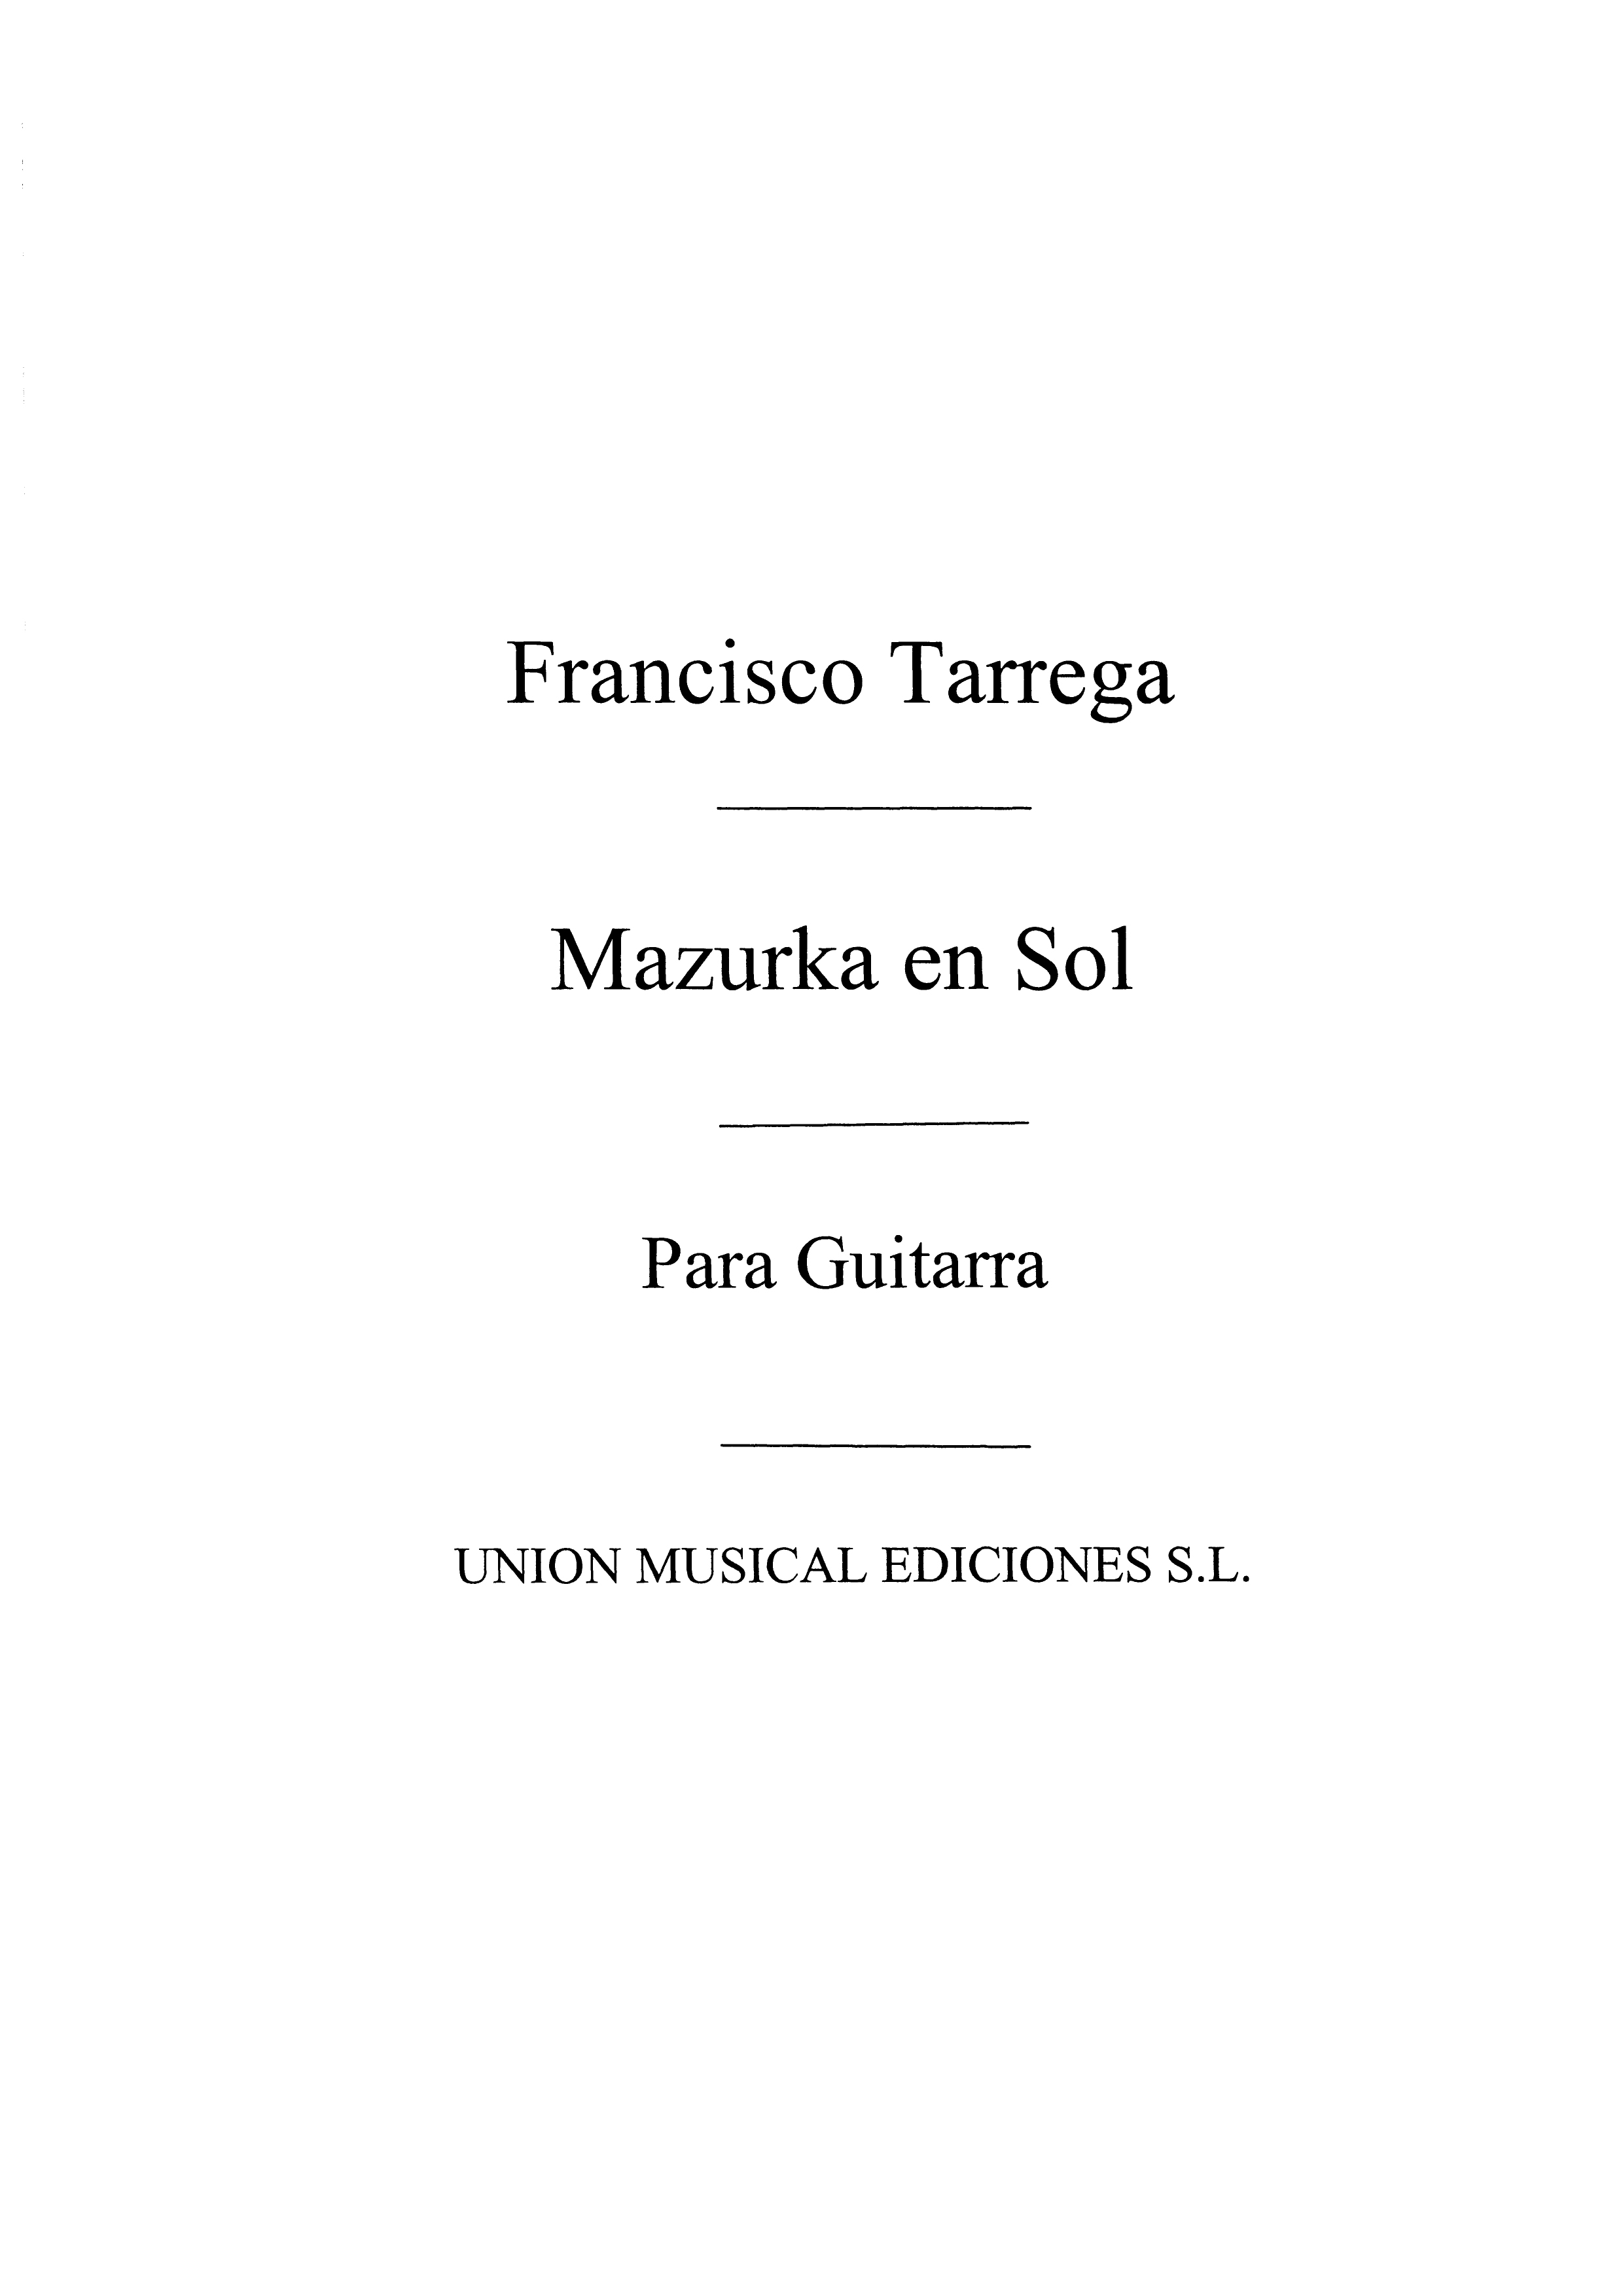 Tarrega: Mazurka En Sol for Guitar